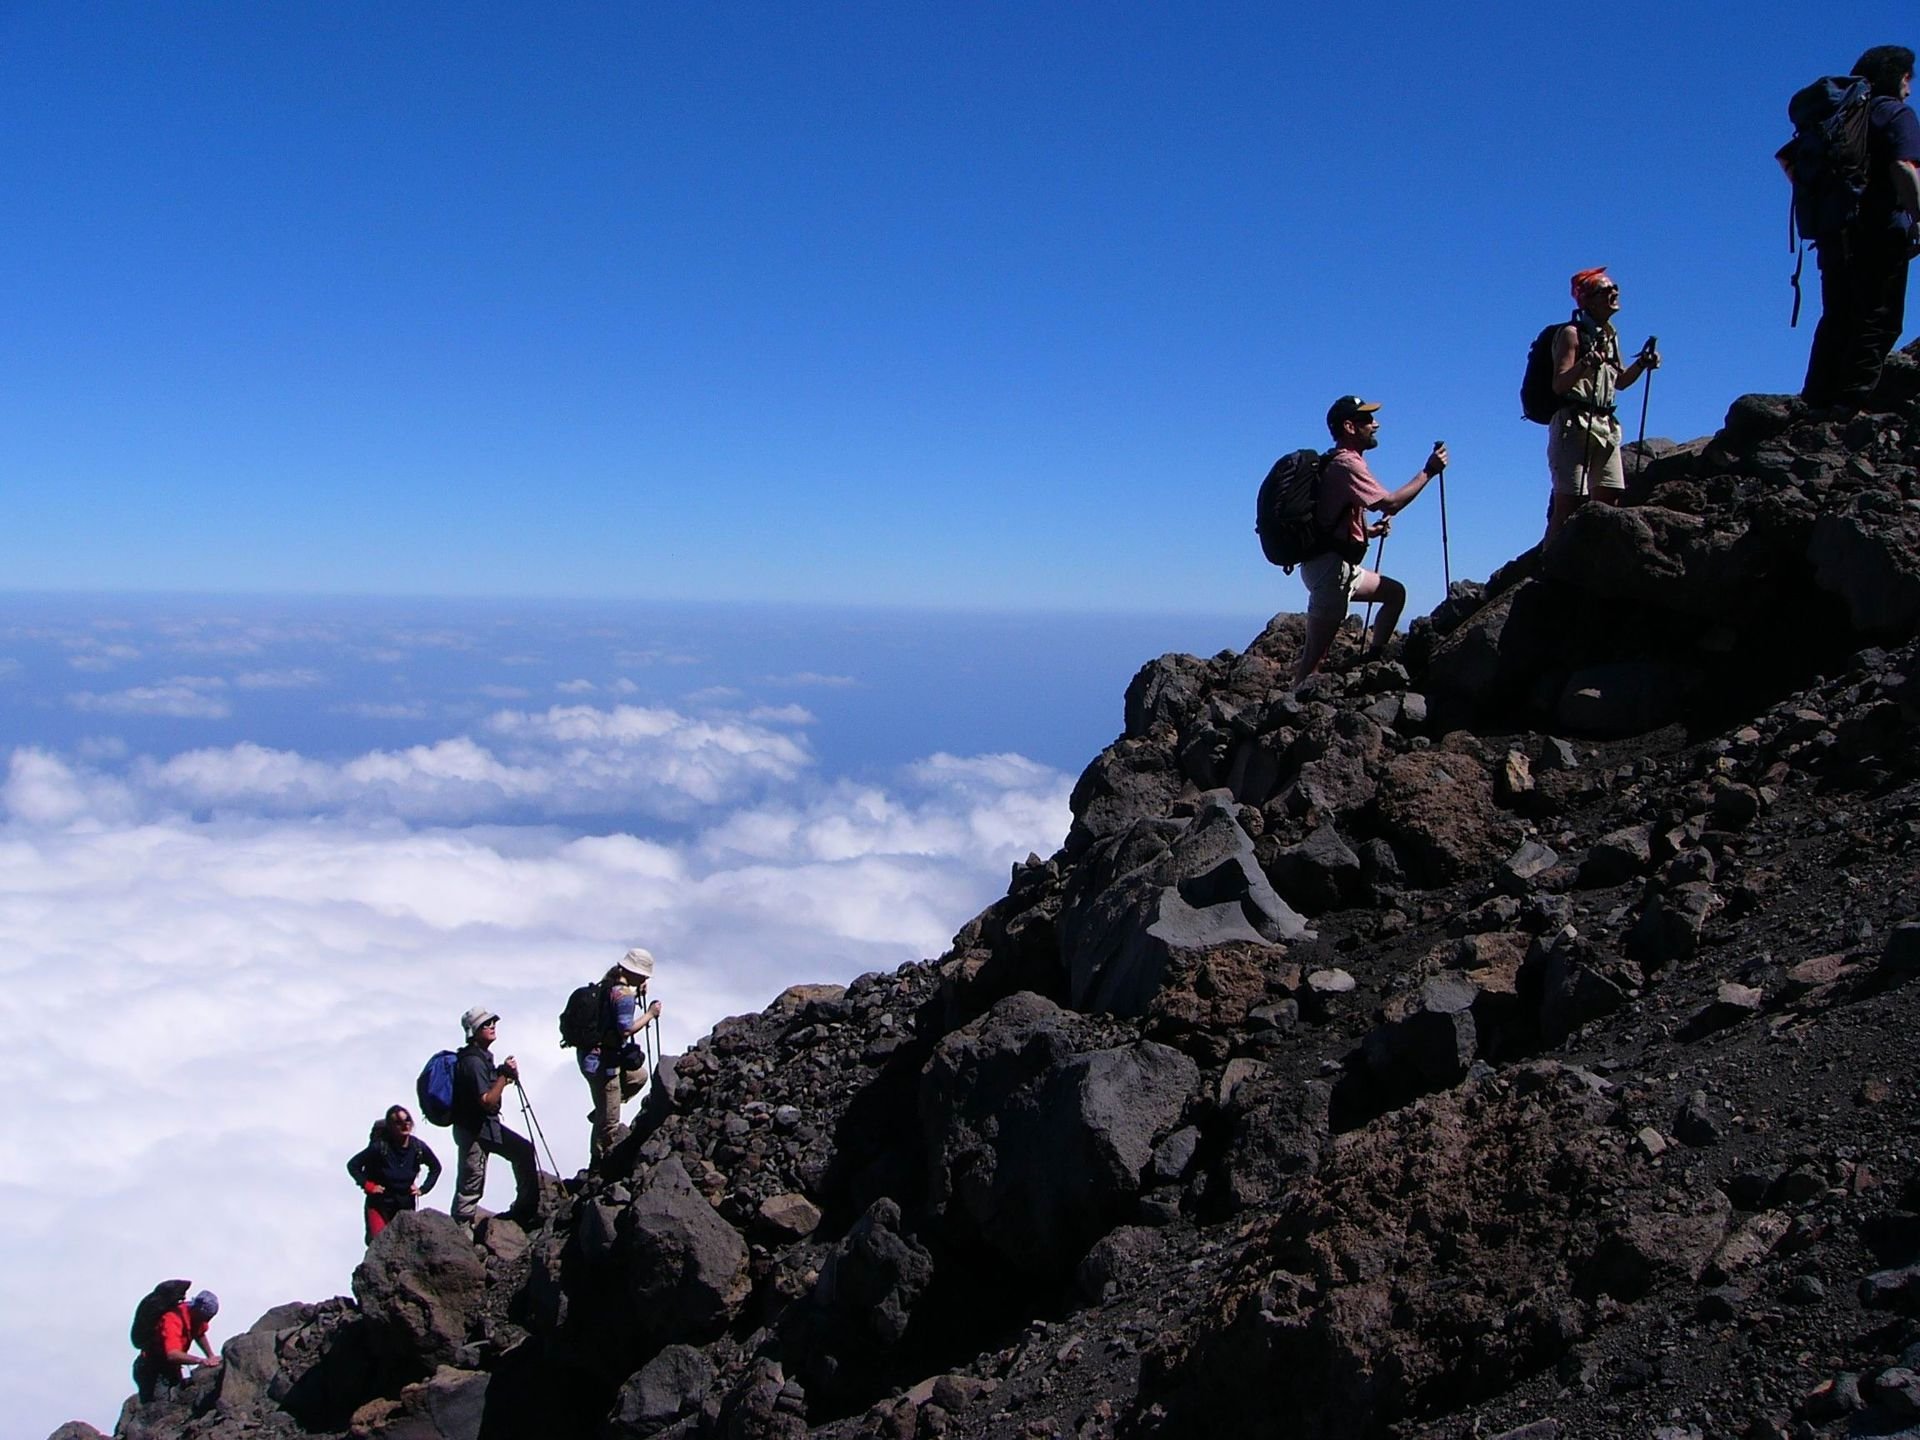 Reisergruppe besteigt eine Vulkan